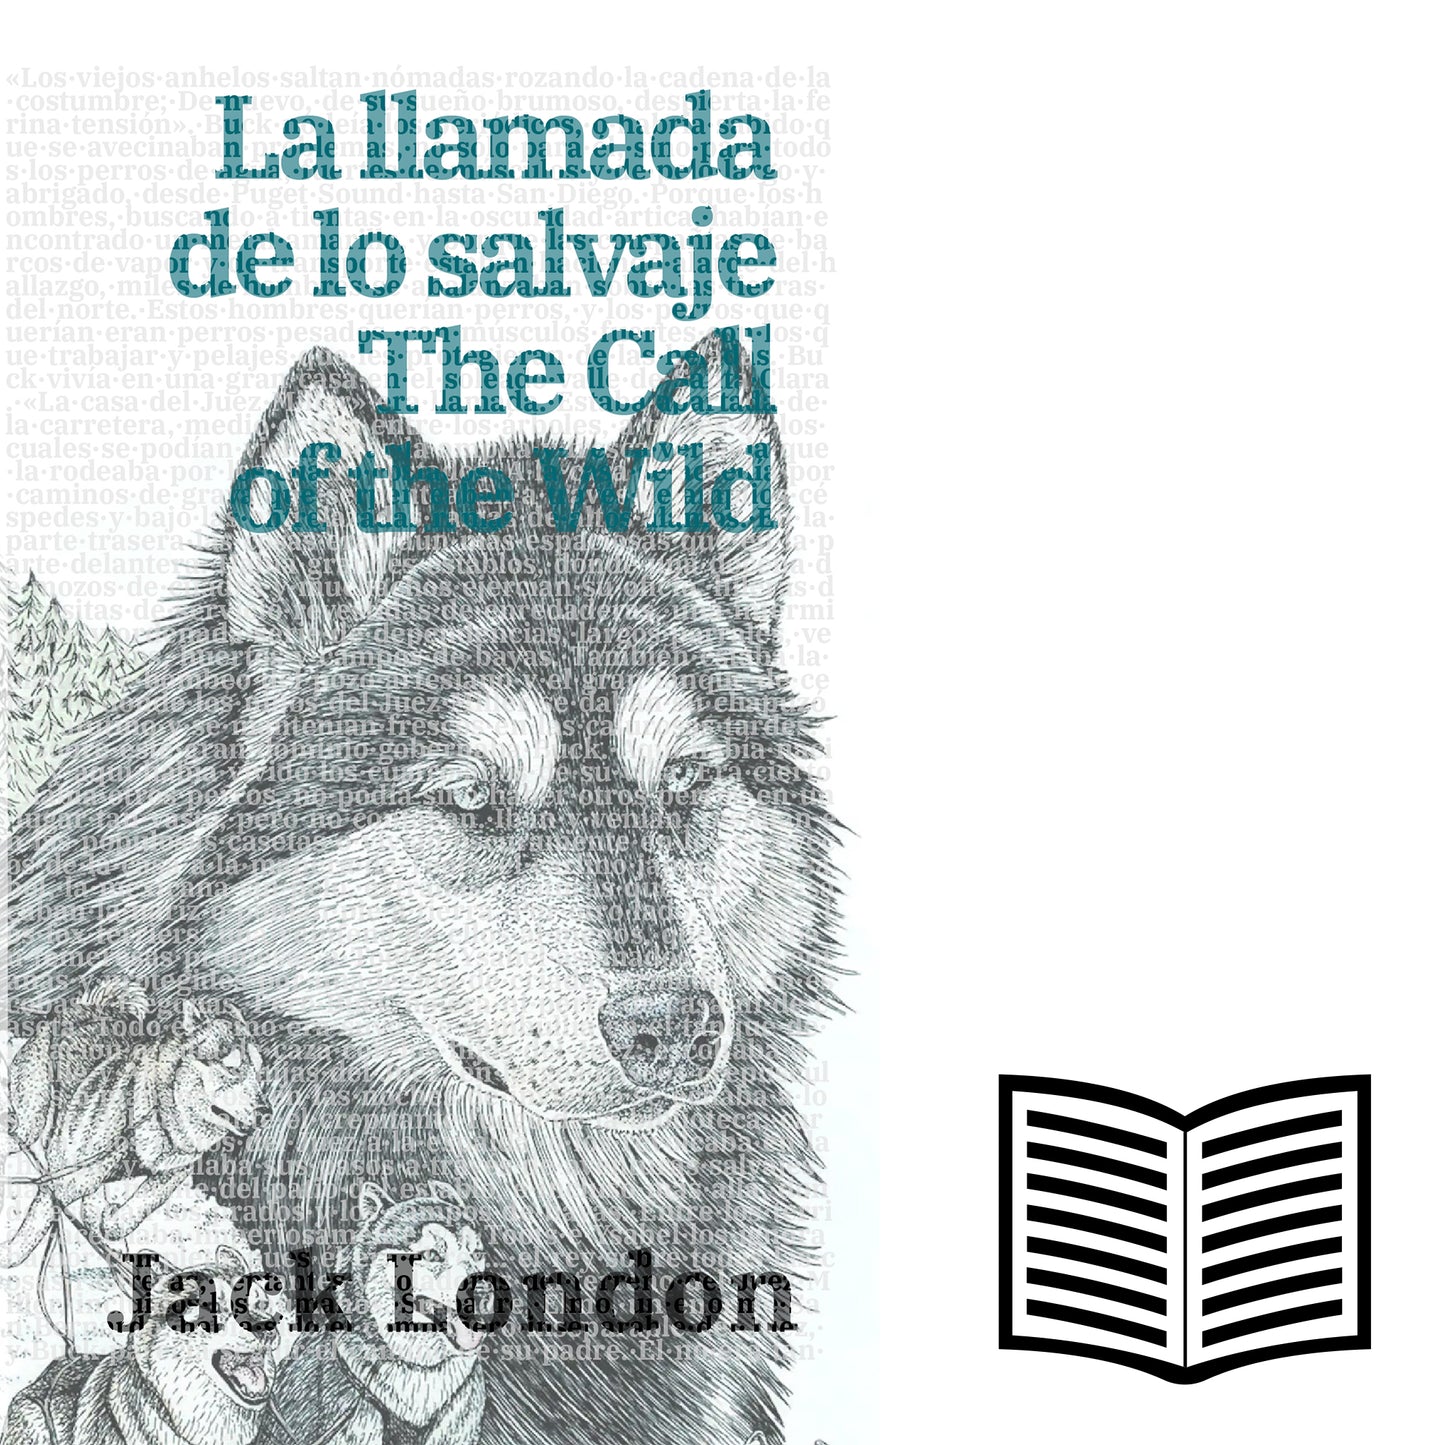 La llamada de lo salvaje - The Call of the Wild | Libro bilingüe - Español / Inglés